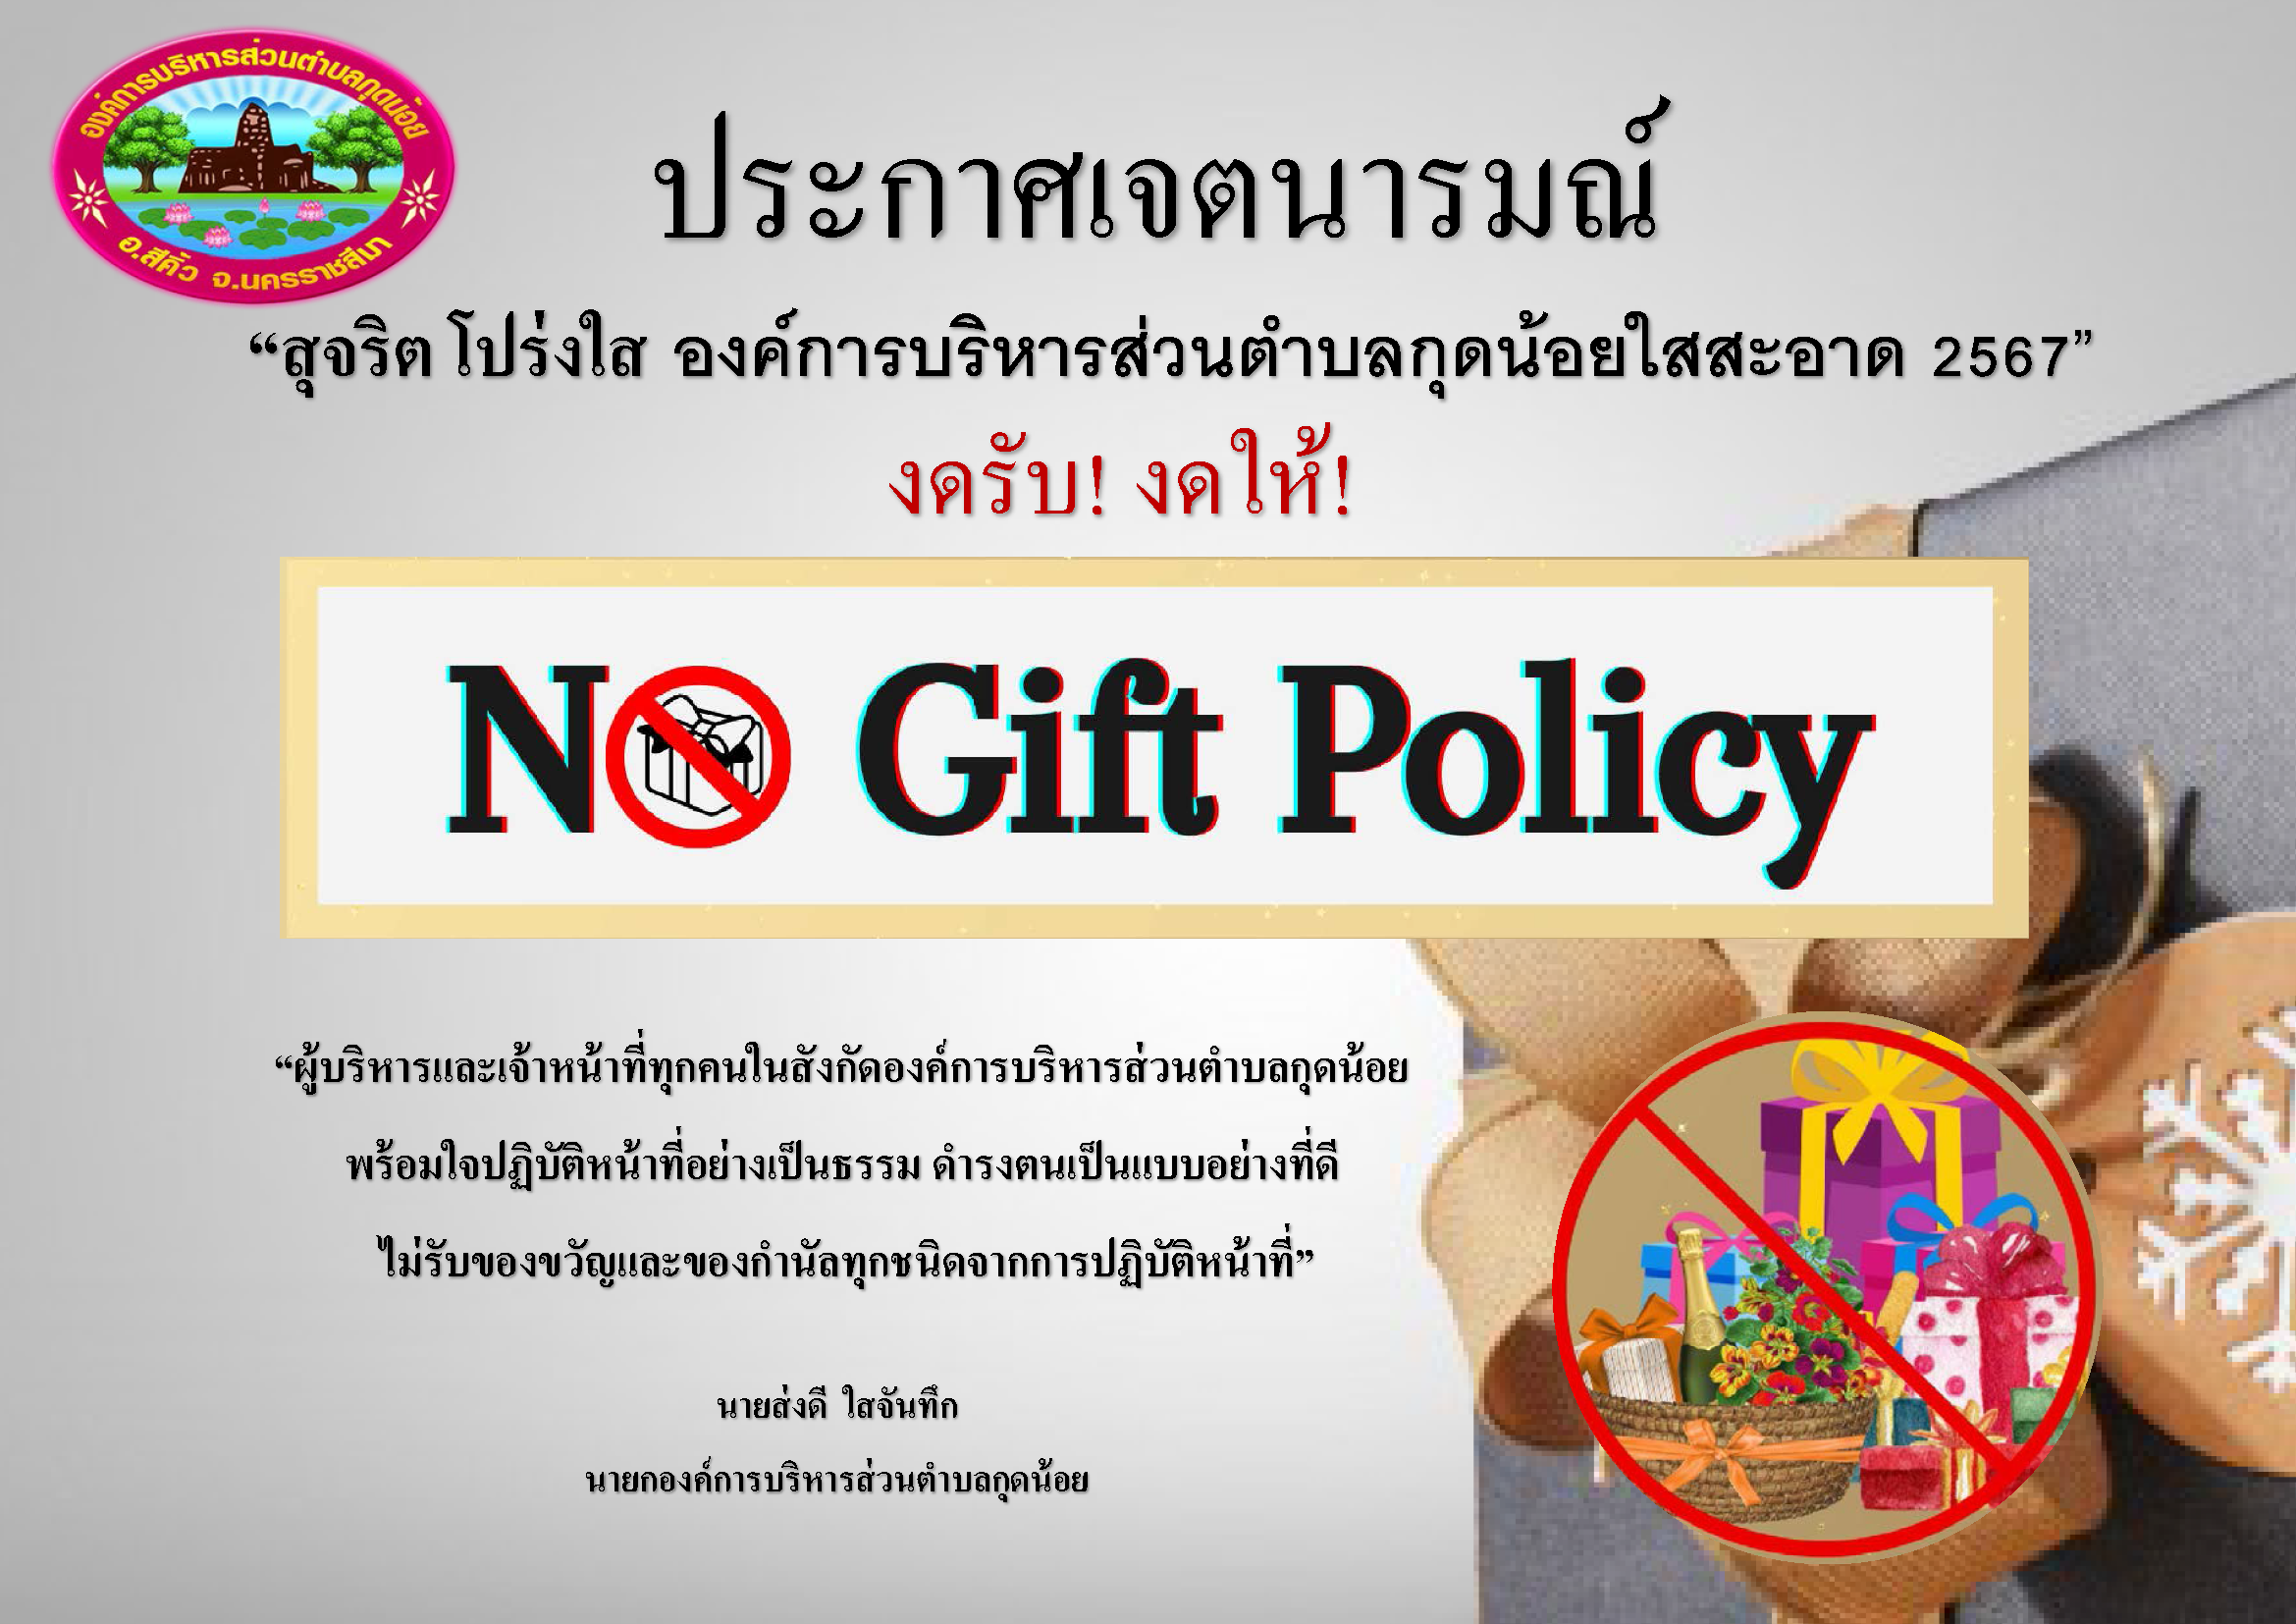 กิจกรรมสร้างวัฒนธรรมปฏิเสธการรับของขวัญเเละของกำนัลจากการปฏิบัติหน้าที่ (No Gift Policy) ประจำปีงบประมาณ พ.ศ. 2567